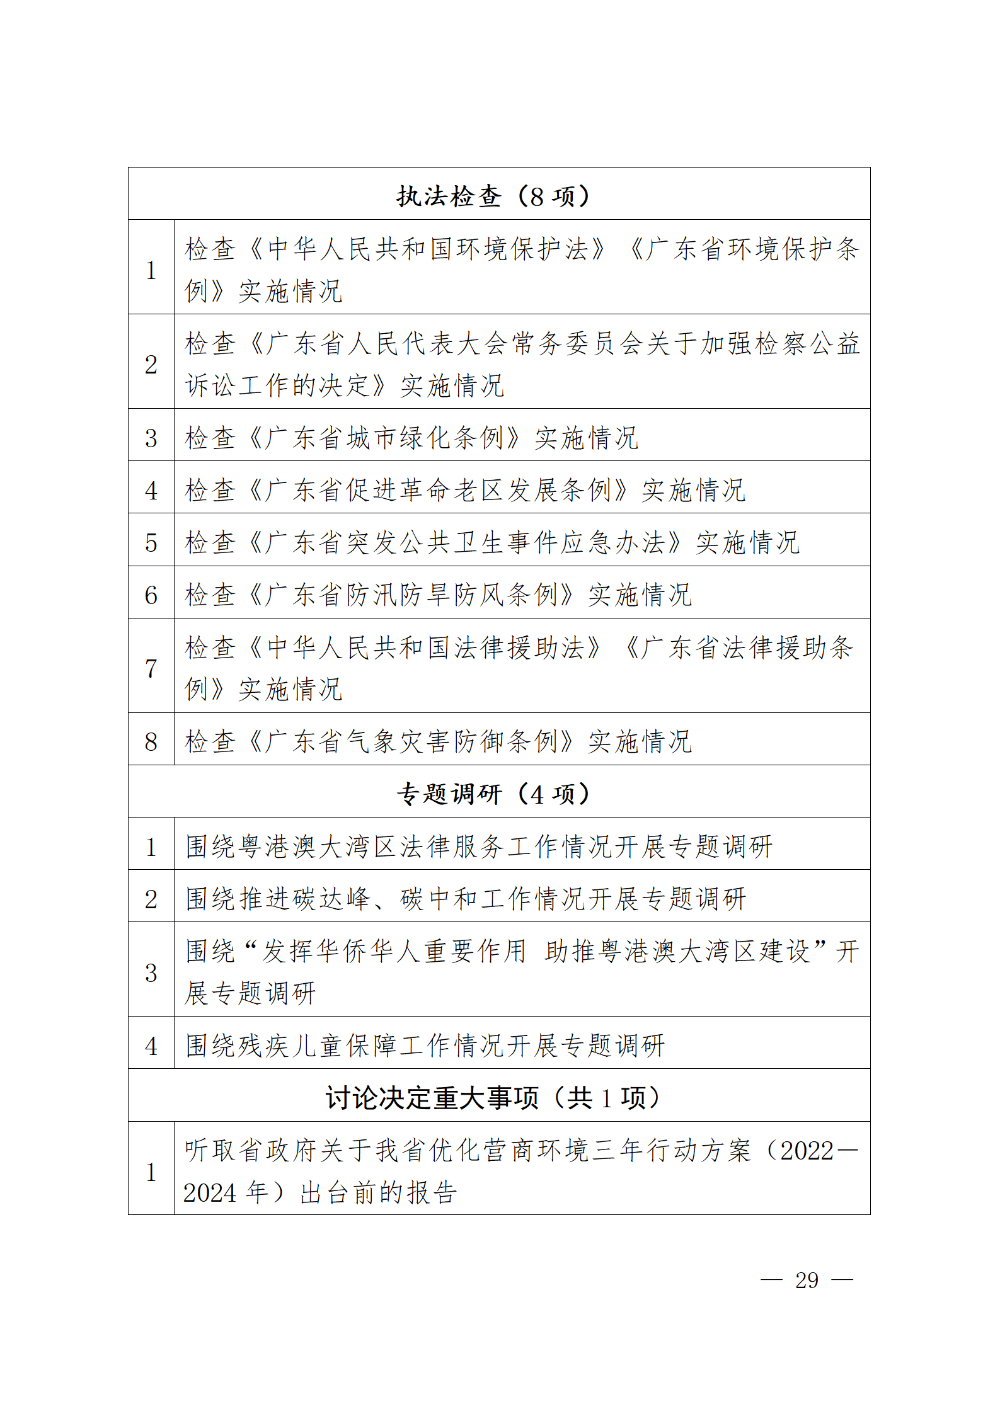 230115-（登报版定稿）广东省人民代表大会常务委员会工作报告_29.png